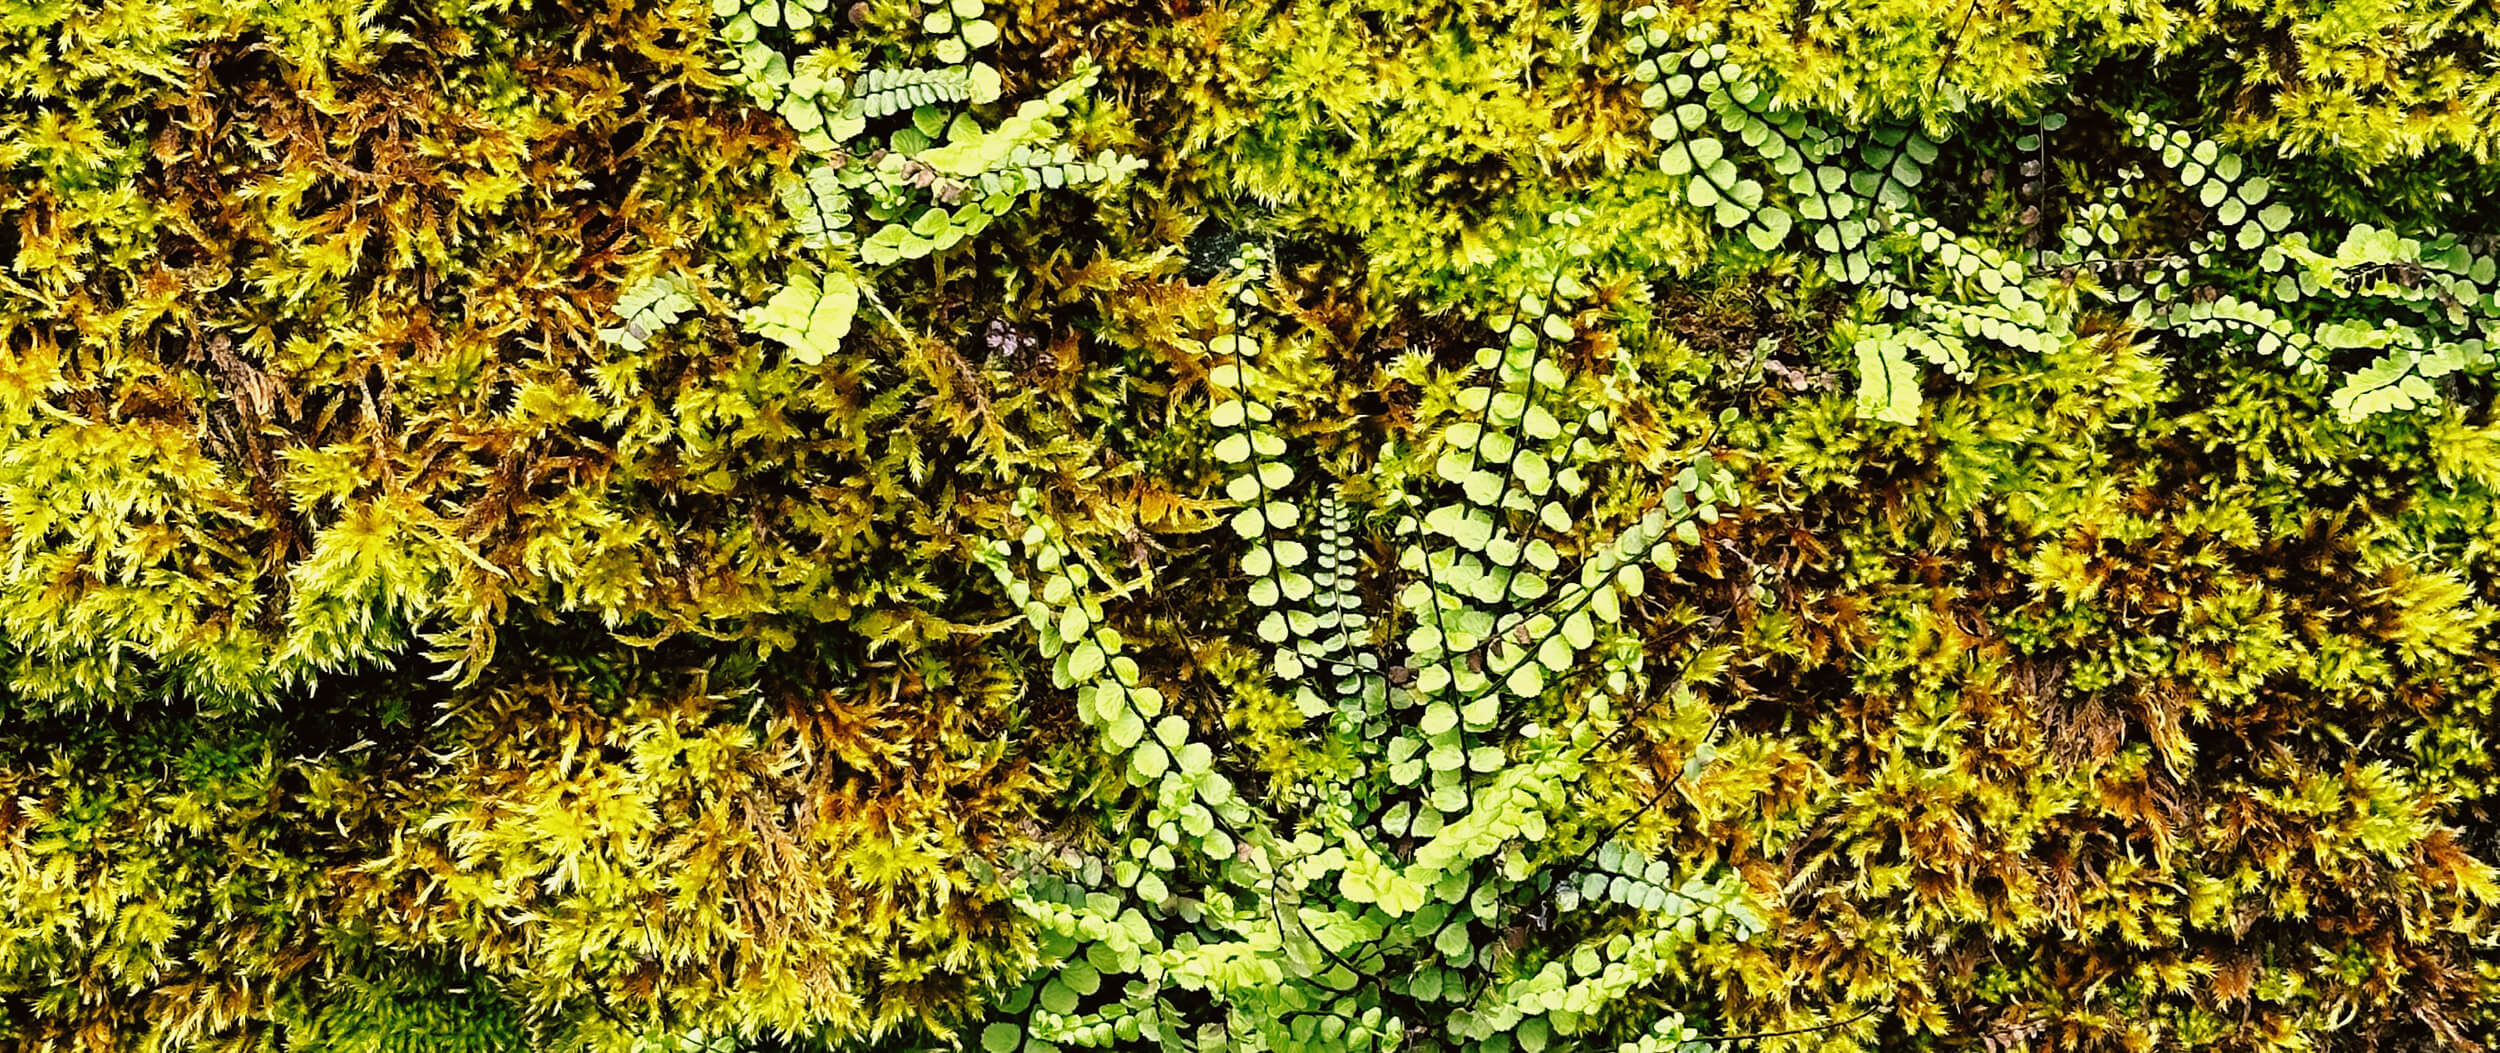 Matthias Maier | Stories | Week 16 | Moss and ferns on a wall